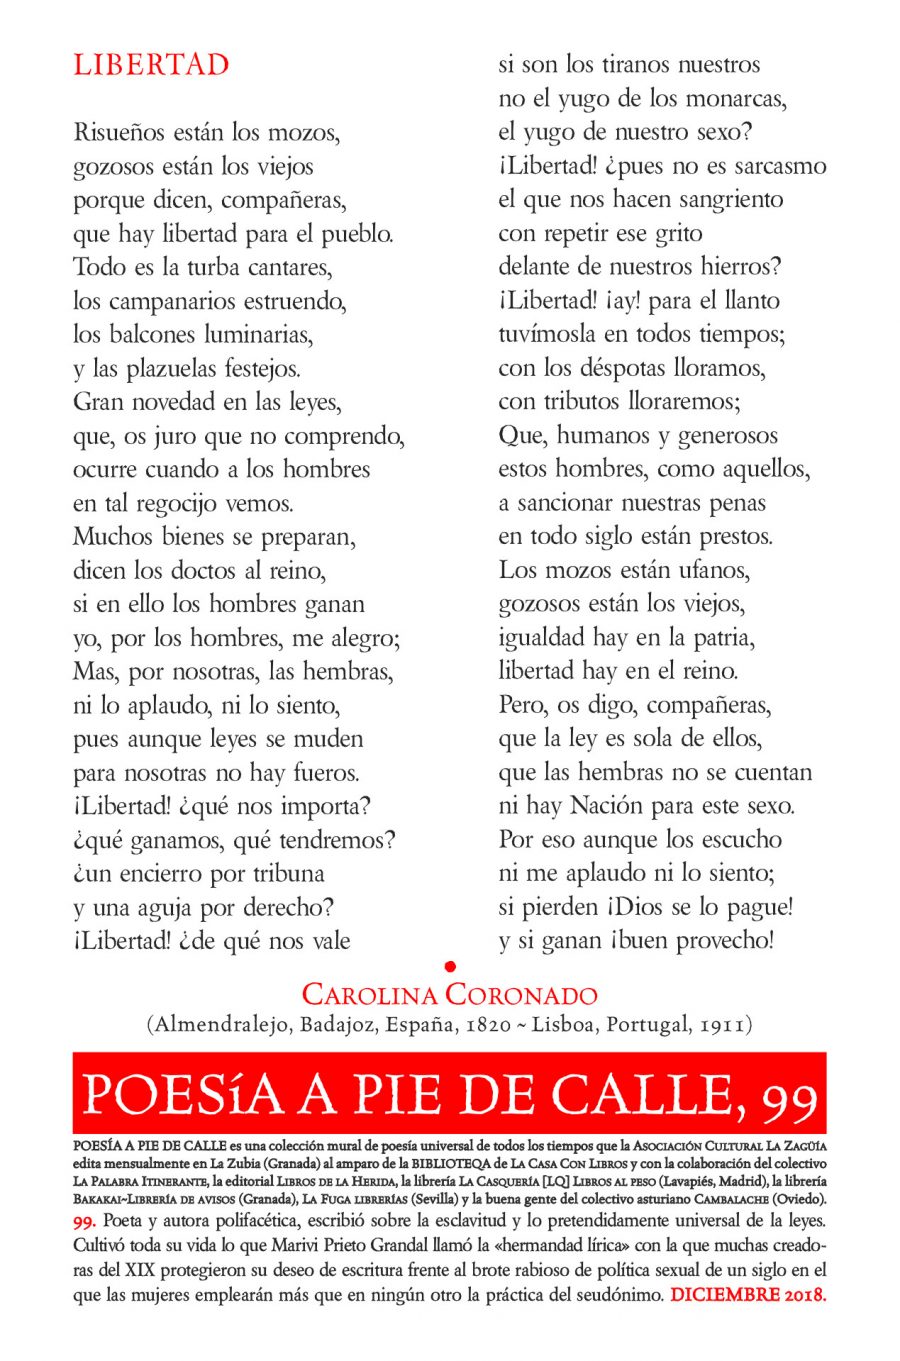 POESÍA A PIE DE CALLE, 99: LIBERTAD, DE CAROLINA CORONADO